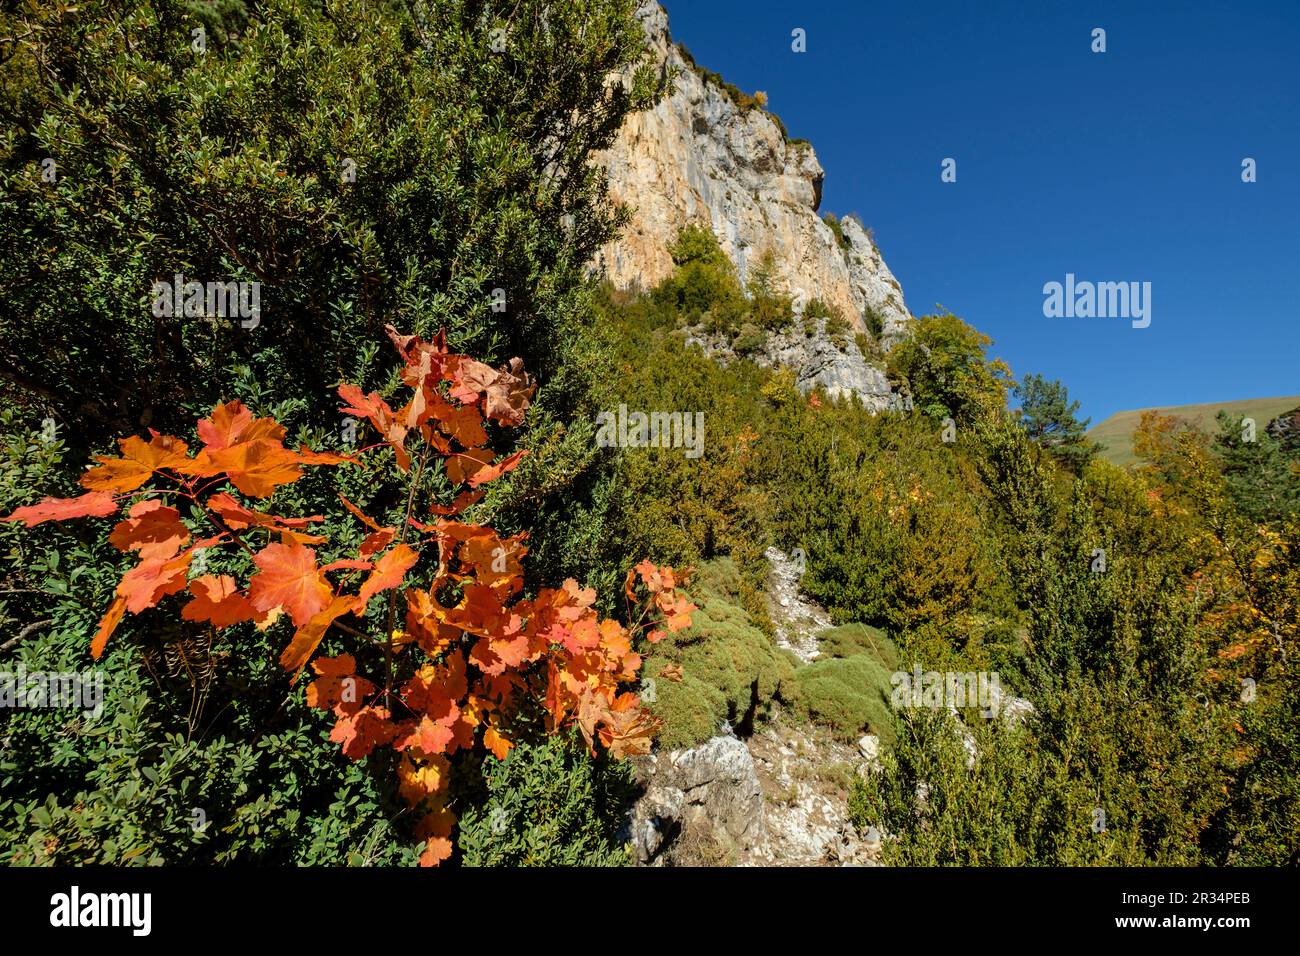 barranco de la Pardina, parque nacional de Ordesa y Monte Perdido, comarca del Sobrarbe, Huesca, Aragón, cordillera de los Pirineos, Spain. Stock Photo